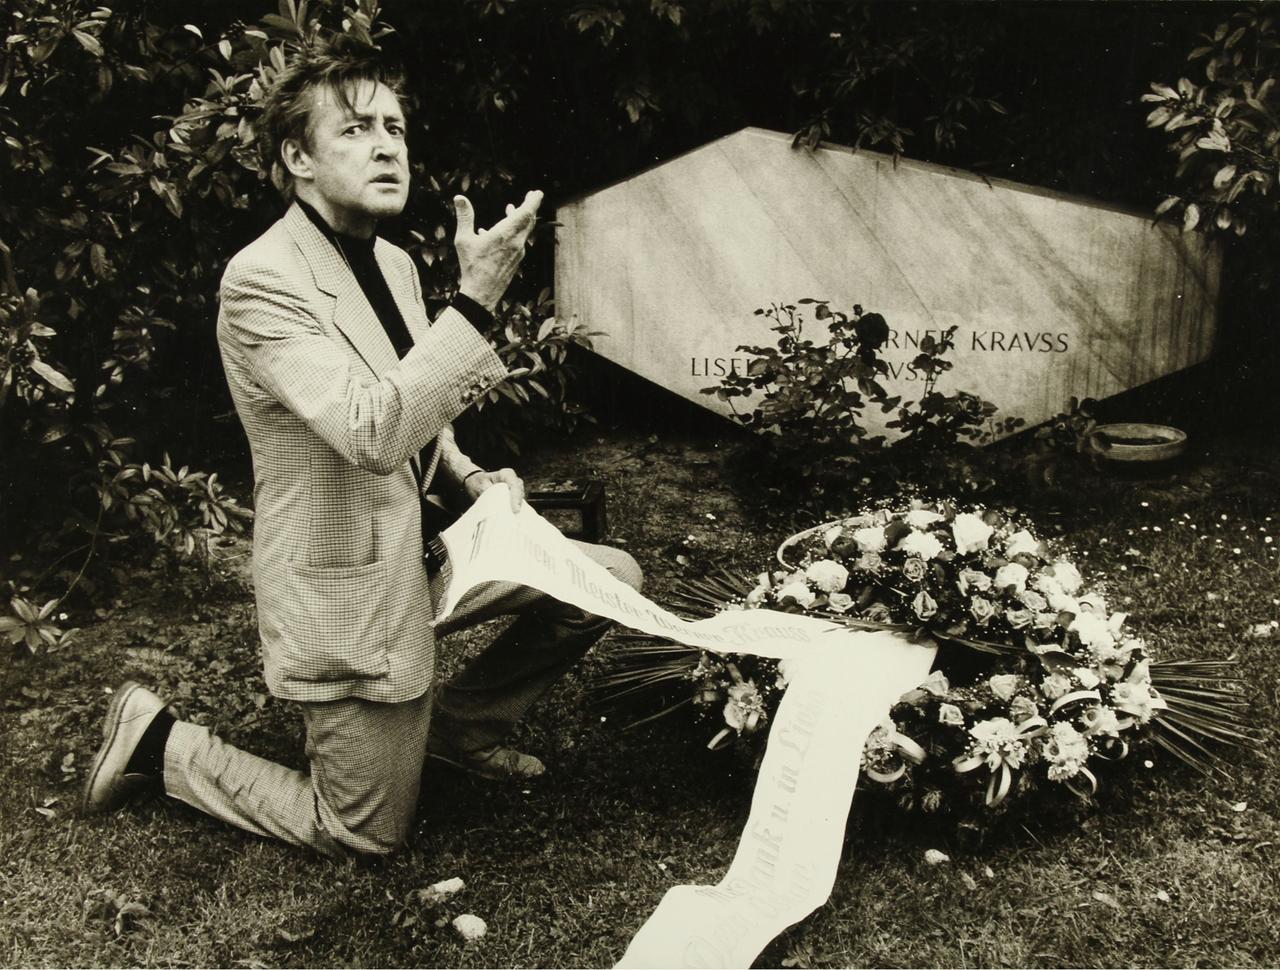 Der Schauspieler Oskar Werner kniet gestikulierend mit einem großen Kranz vor  dem Grab von Burgtheaterschauspieler Werner Krauß am Wiener Zentralfriedhof